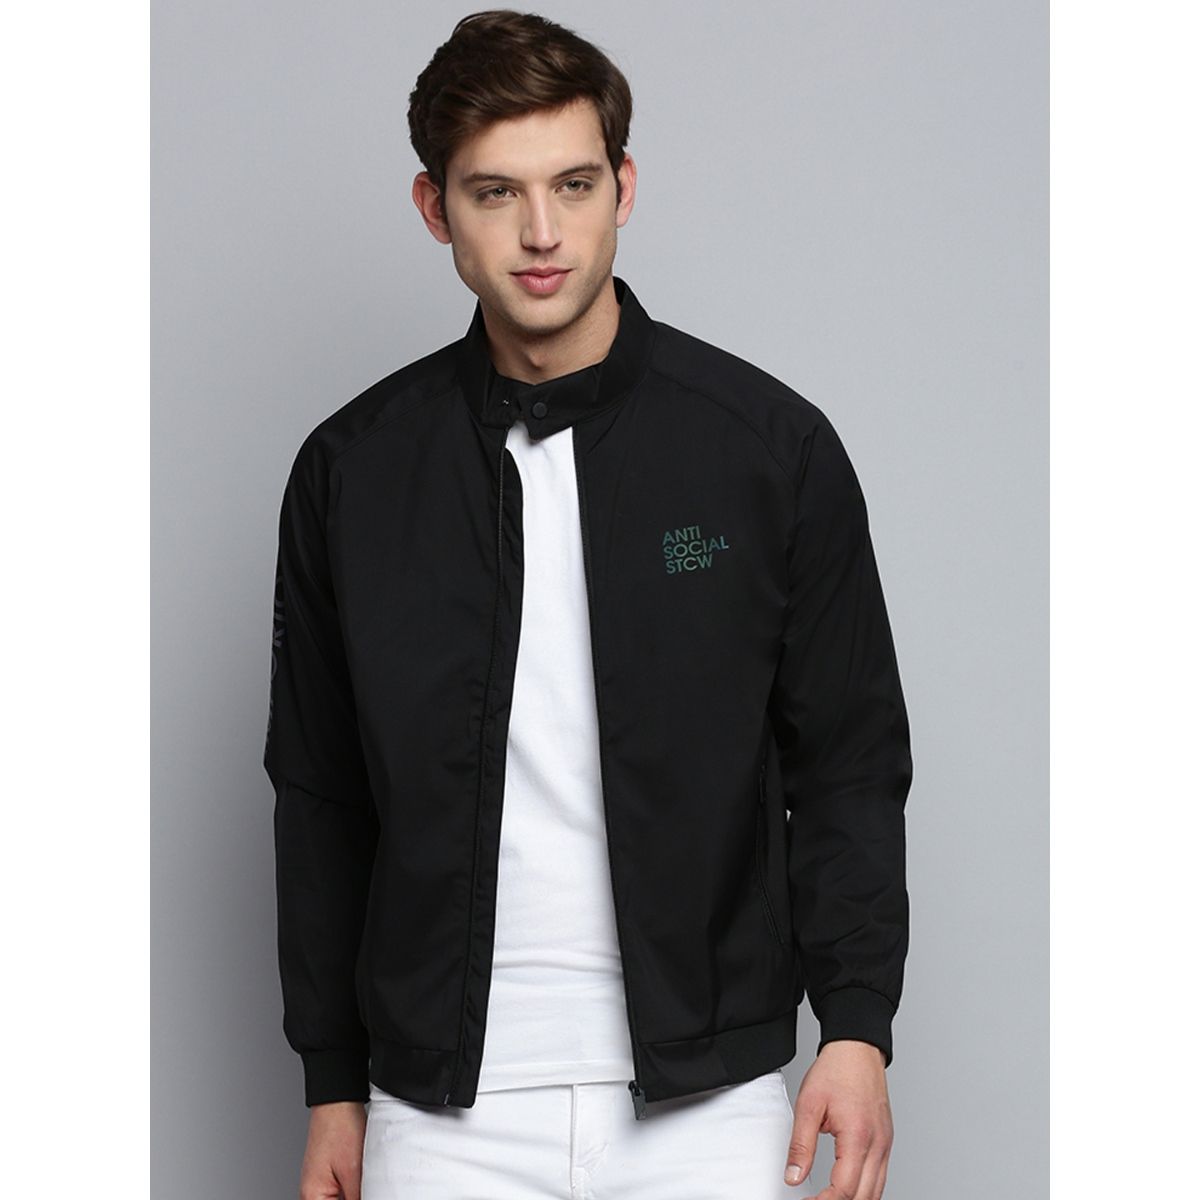 SHOWOFF Men's Mock Collar Solid Black Open Front Jacket: Buy